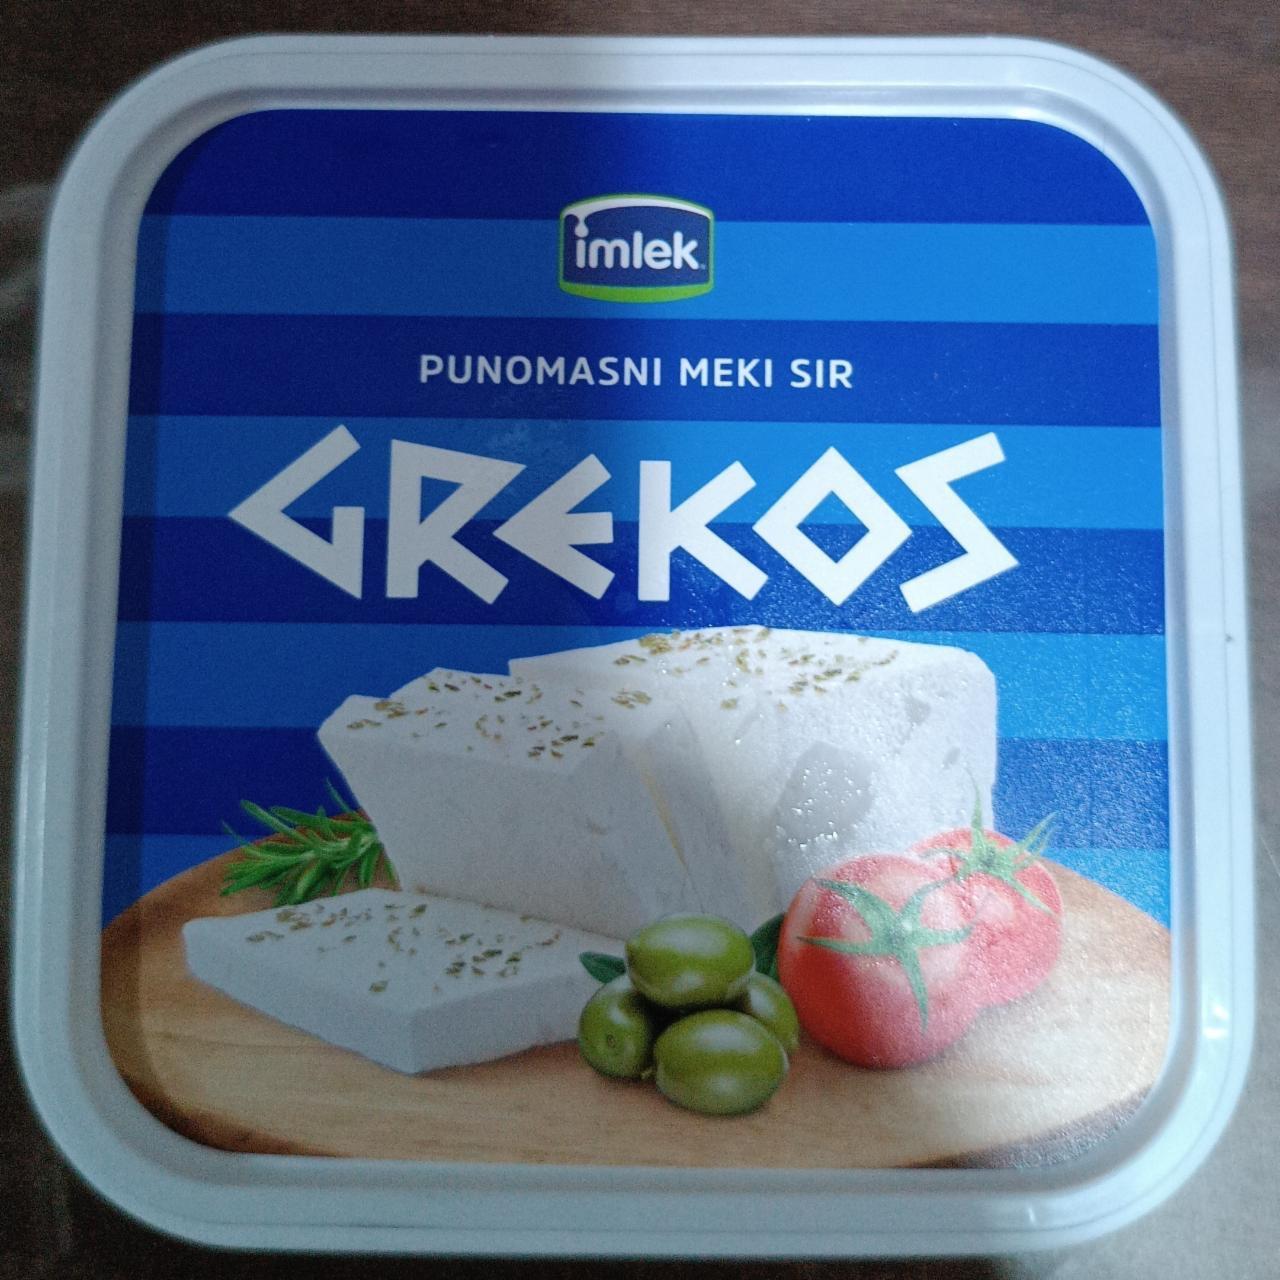 Képek - Feta sajt Grekos imlek